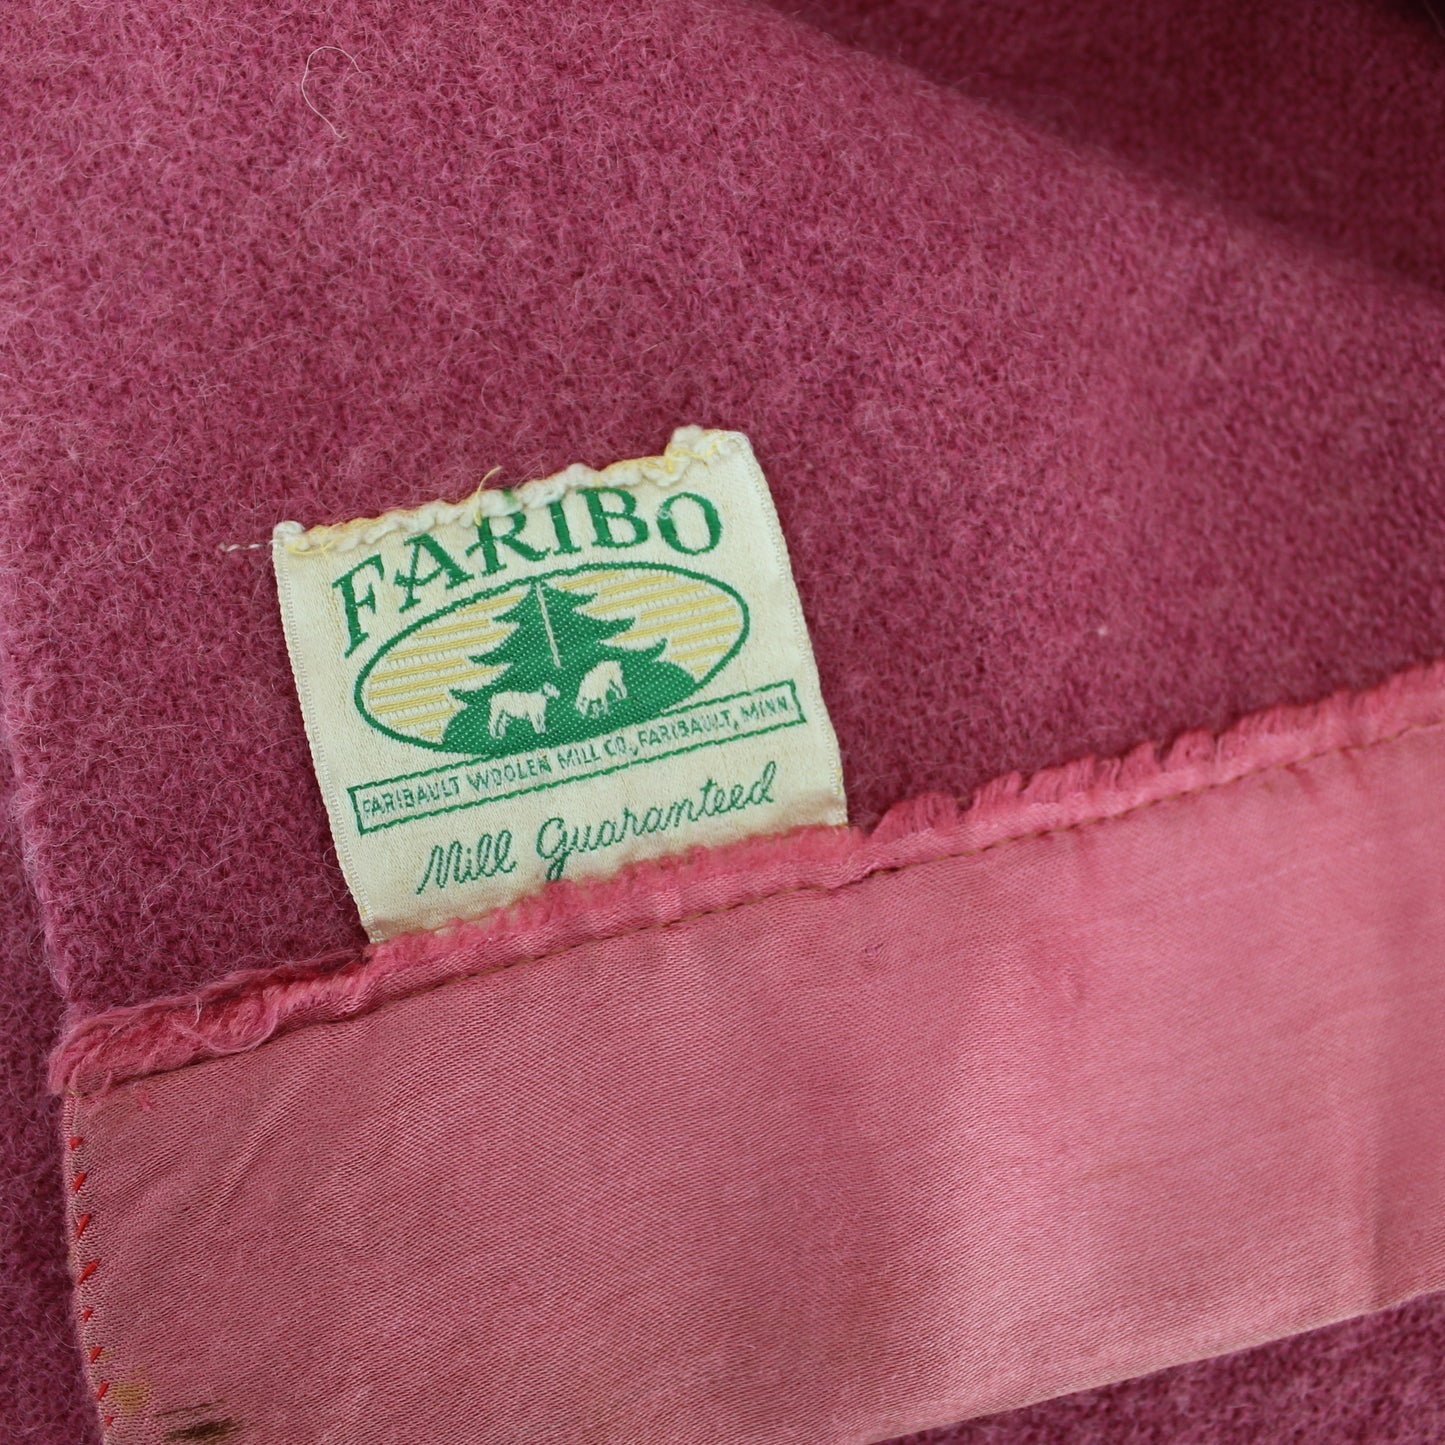 Faribo Wool Blanket Vintage Mid Century Rose with Satin Binding - 69" X 86" original old ribbon label pine tree sheep